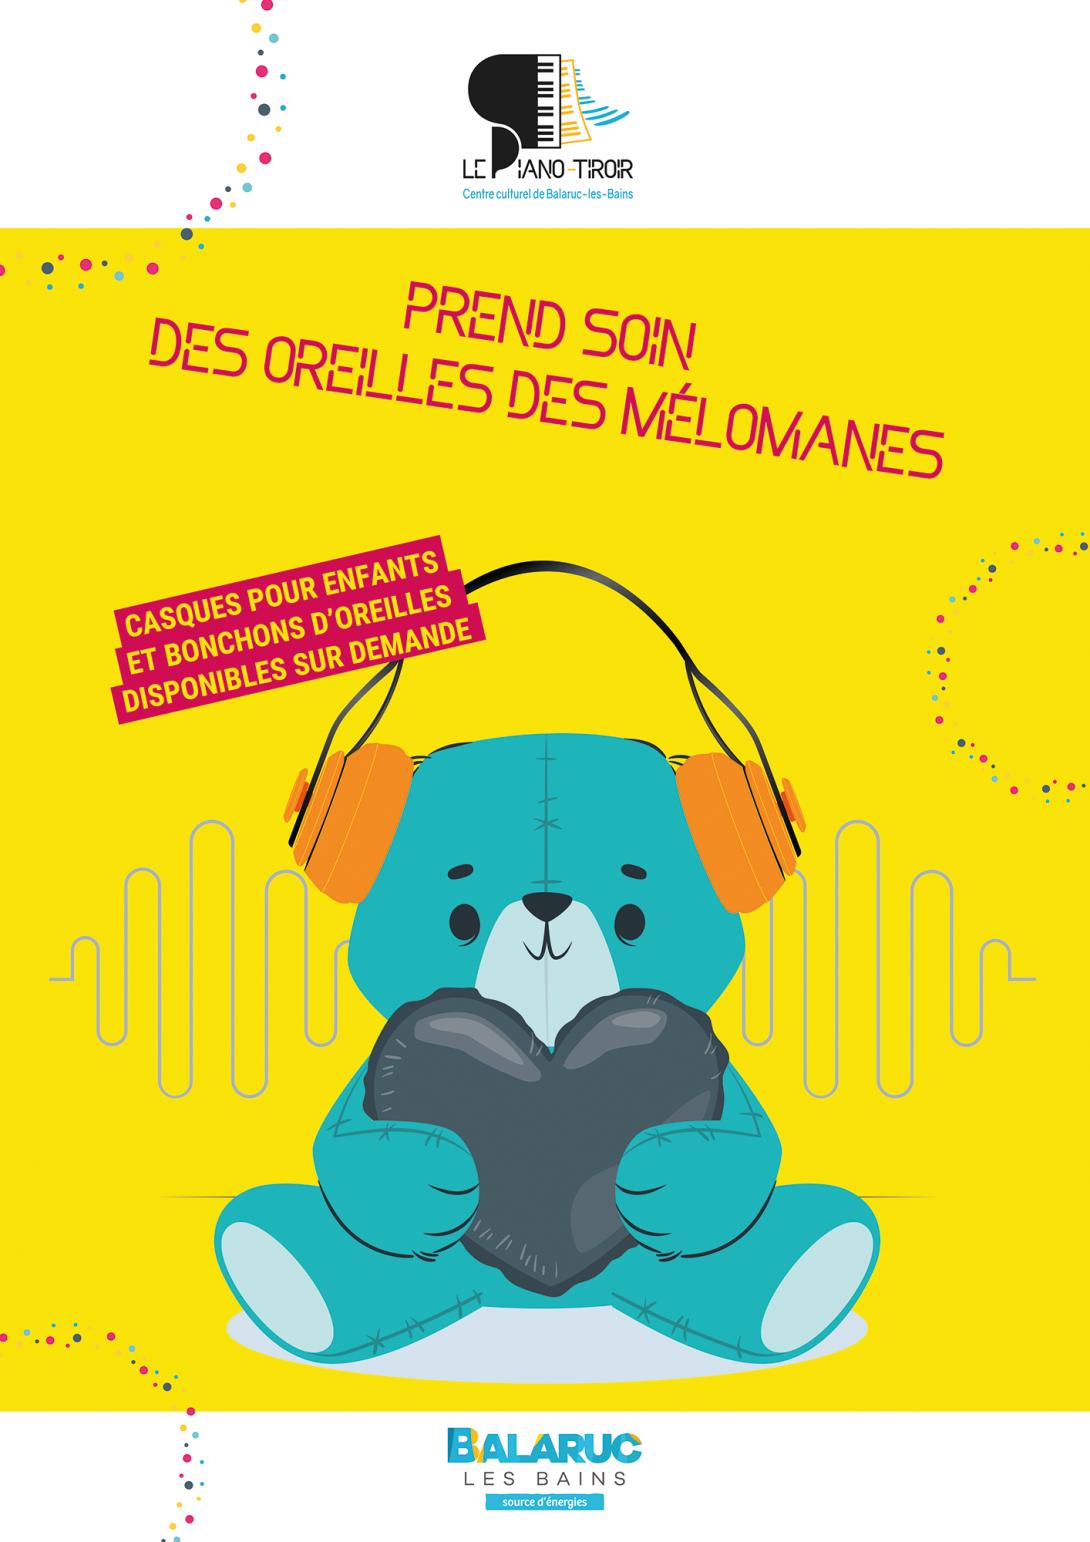 Prévention audition, un ourson en peluche est équipé d'un casque anti-bruit. Le centre culturel de Balaruc-les-Bains prend soin des oreilles des jeunes mélomanes.